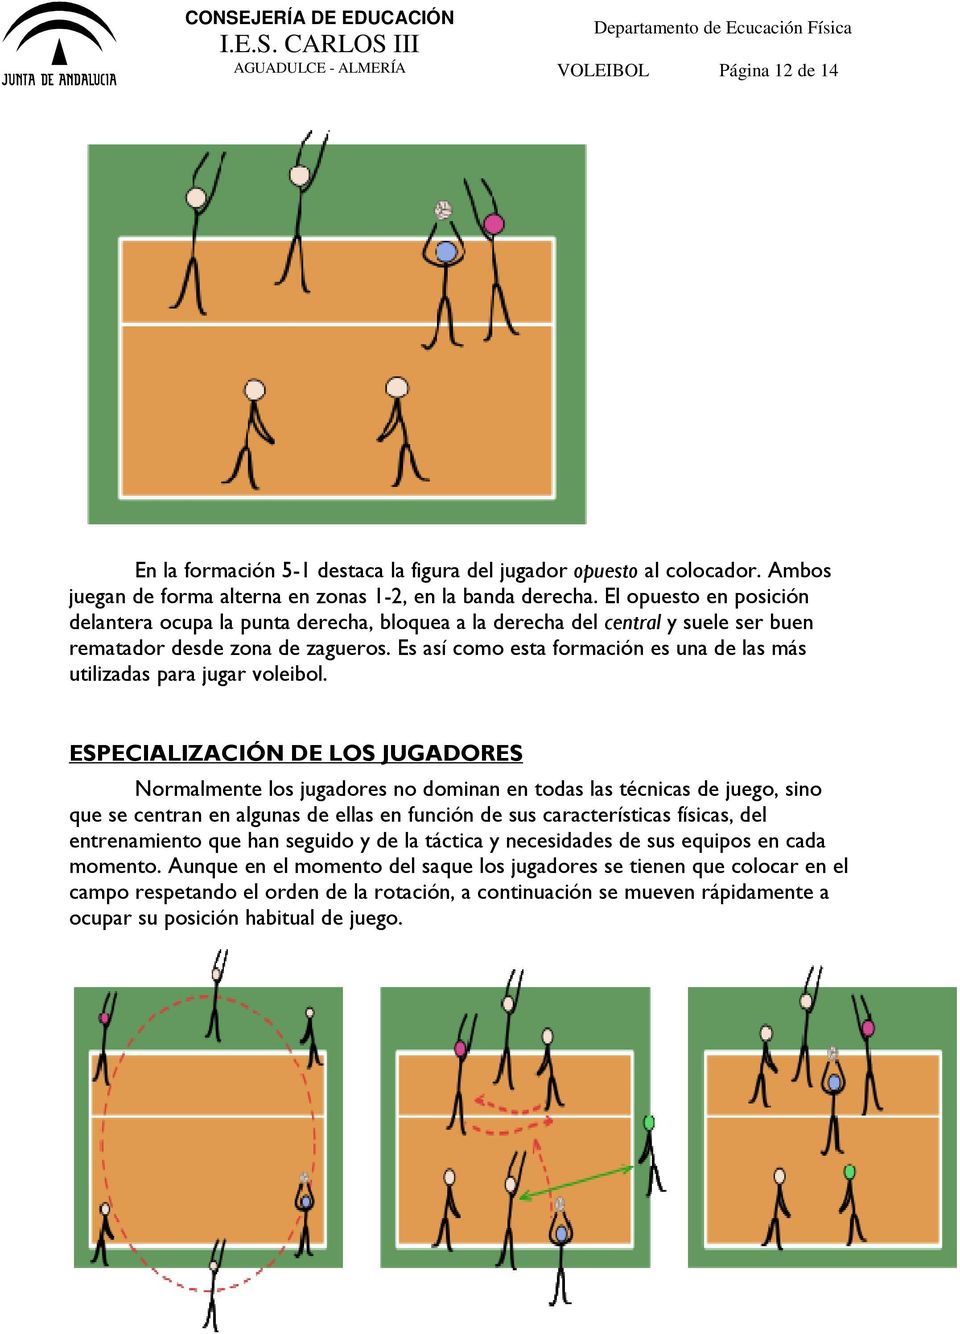 Es así como esta formación es una de las más utilizadas para jugar voleibol.